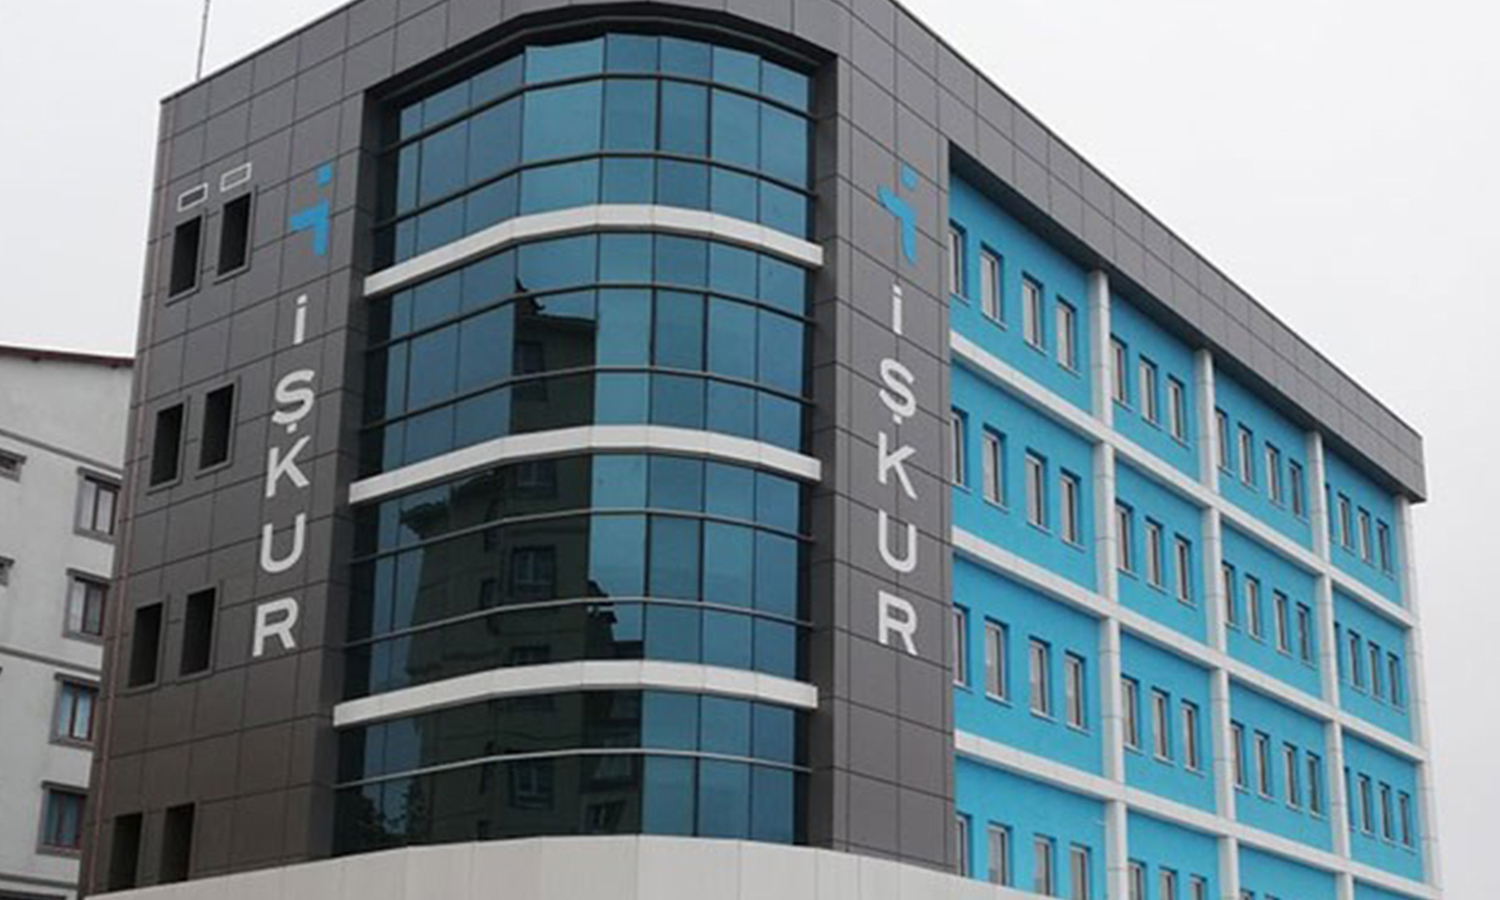  منظمة işkur تكشف عن أخبار سارة لكل شخص عاطل عن العمل في تركيا